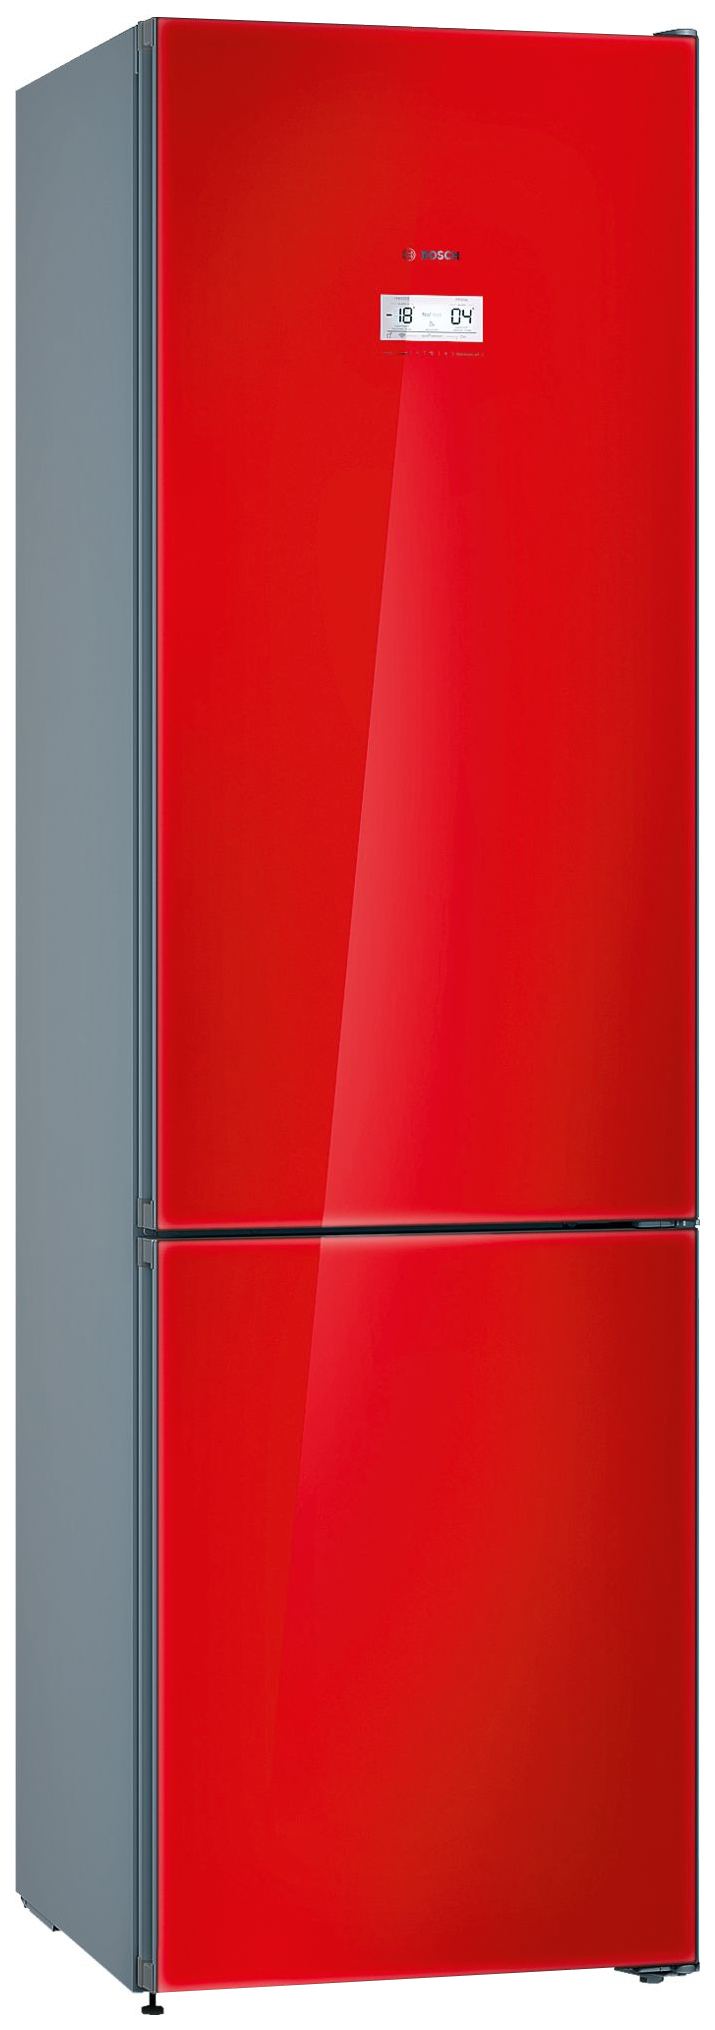 Купить холодильник в ярославле недорого. Холодильник Bosch kgn39jr3ar. Холодильник Bosch KGN 31r. Холодильник Bosch KGN 39lr31r. Холодильник Bosch kgn39lr10r.